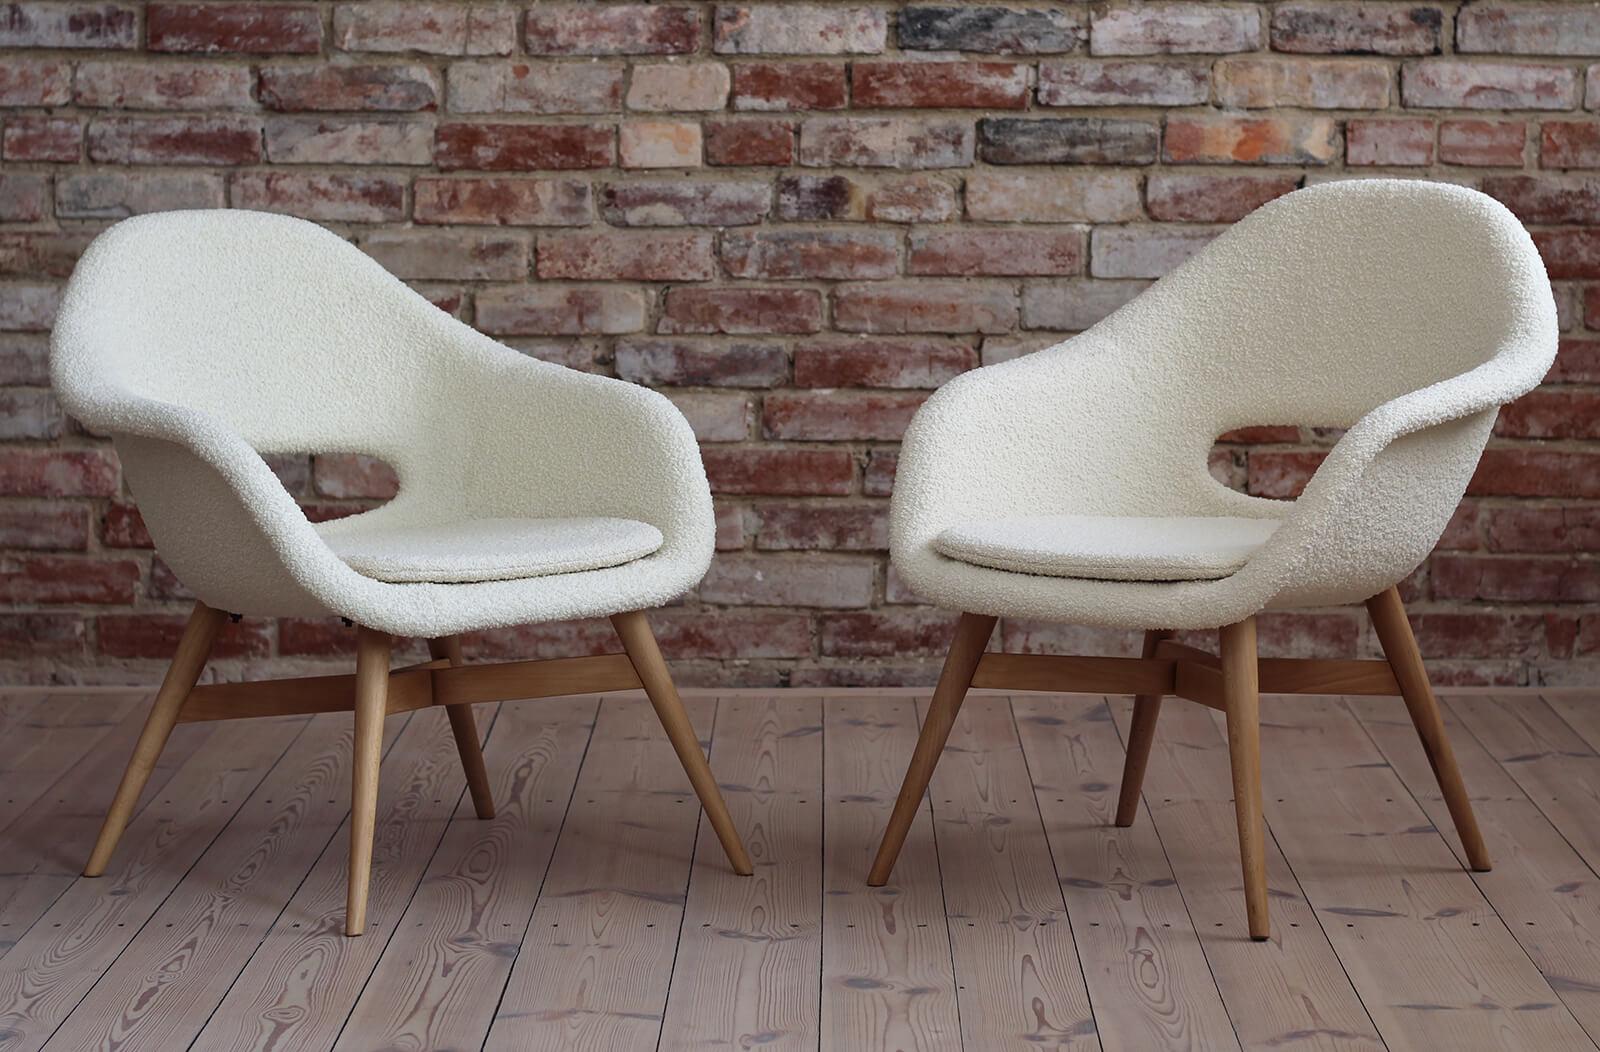 Dieses Set aus 2 Loungesesseln wurde ursprünglich von dem berühmten tschechischen Designer Miroslav Navrátil in den 1950er Jahren entworfen. Die Sitzschale ist aus Fiberglas und steht auf einem Holzsockel. Das gesamte Stück wurde sorgfältig